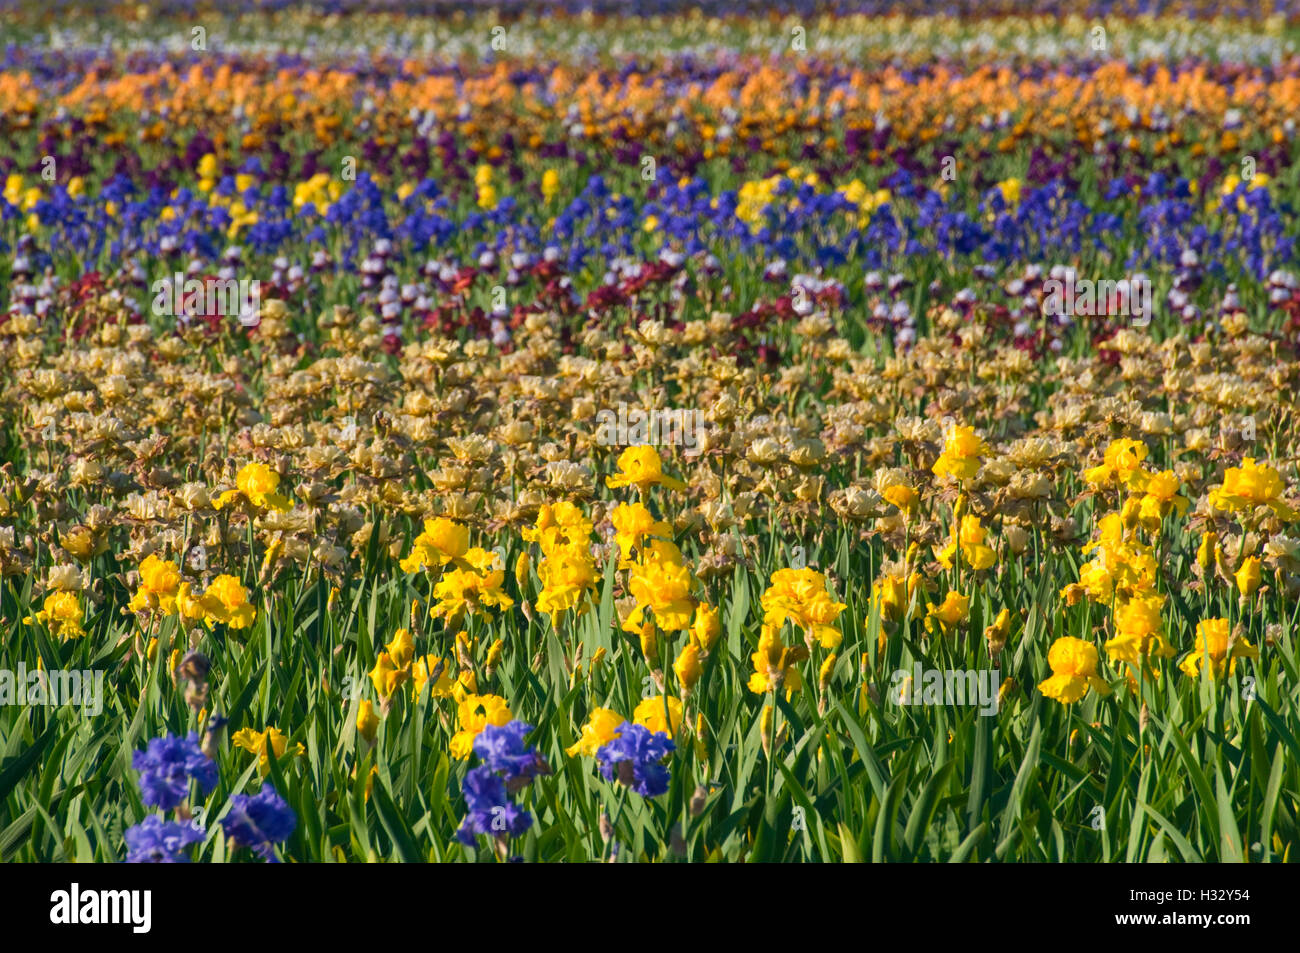 Iris field, Schreiners Iris Gardens, Keizer, Oregon Stock Photo